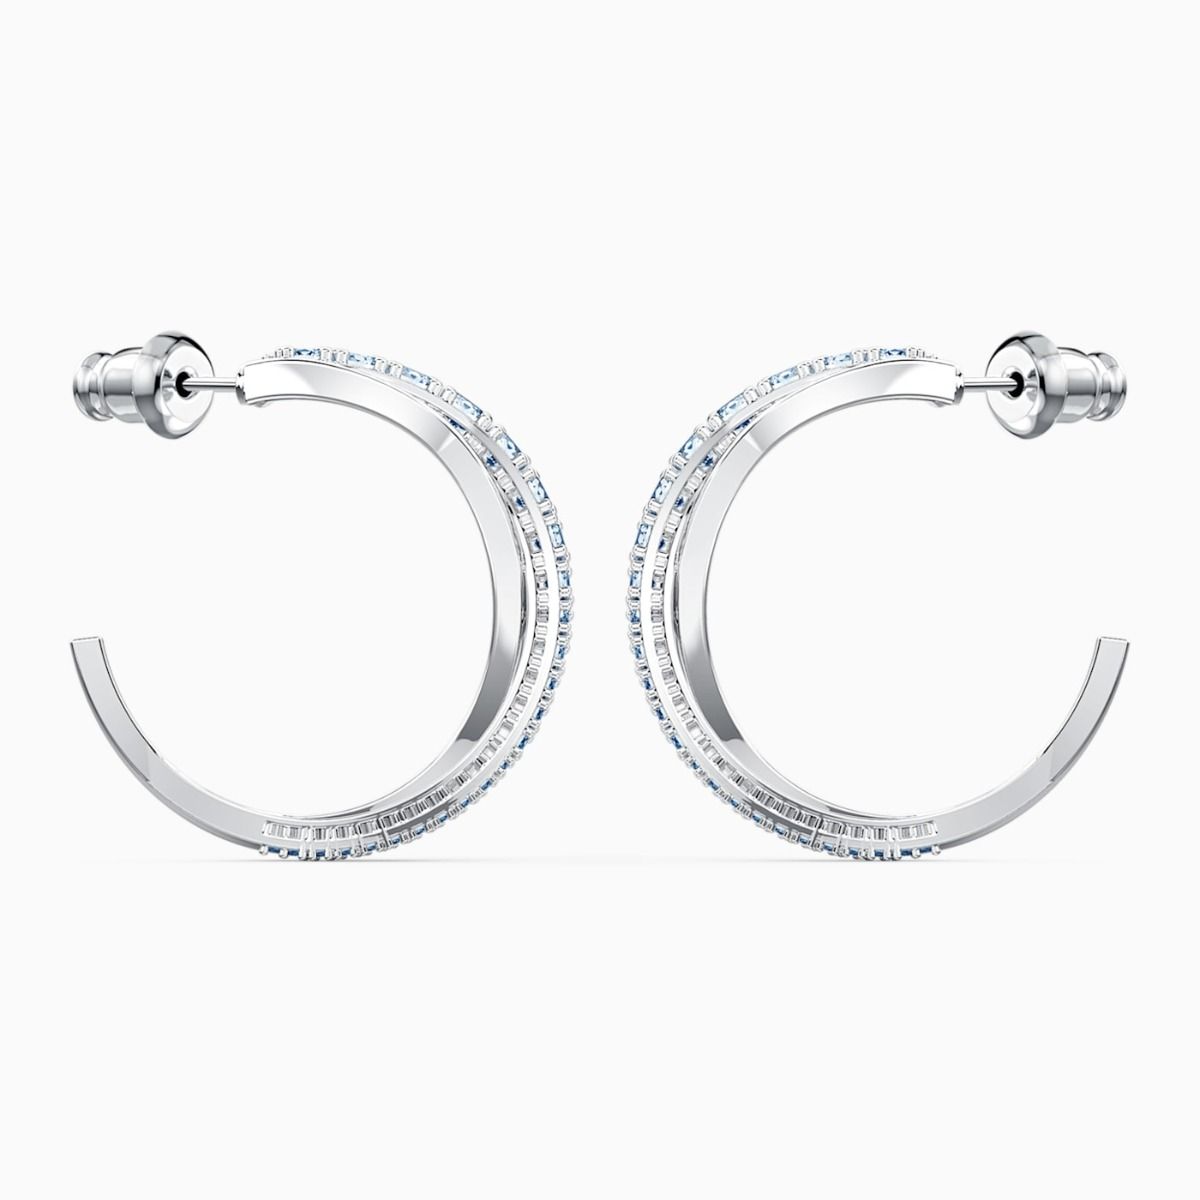 Buy Swarovski Twist Hoop Pierced Earrings Blue With Rhodium Plating